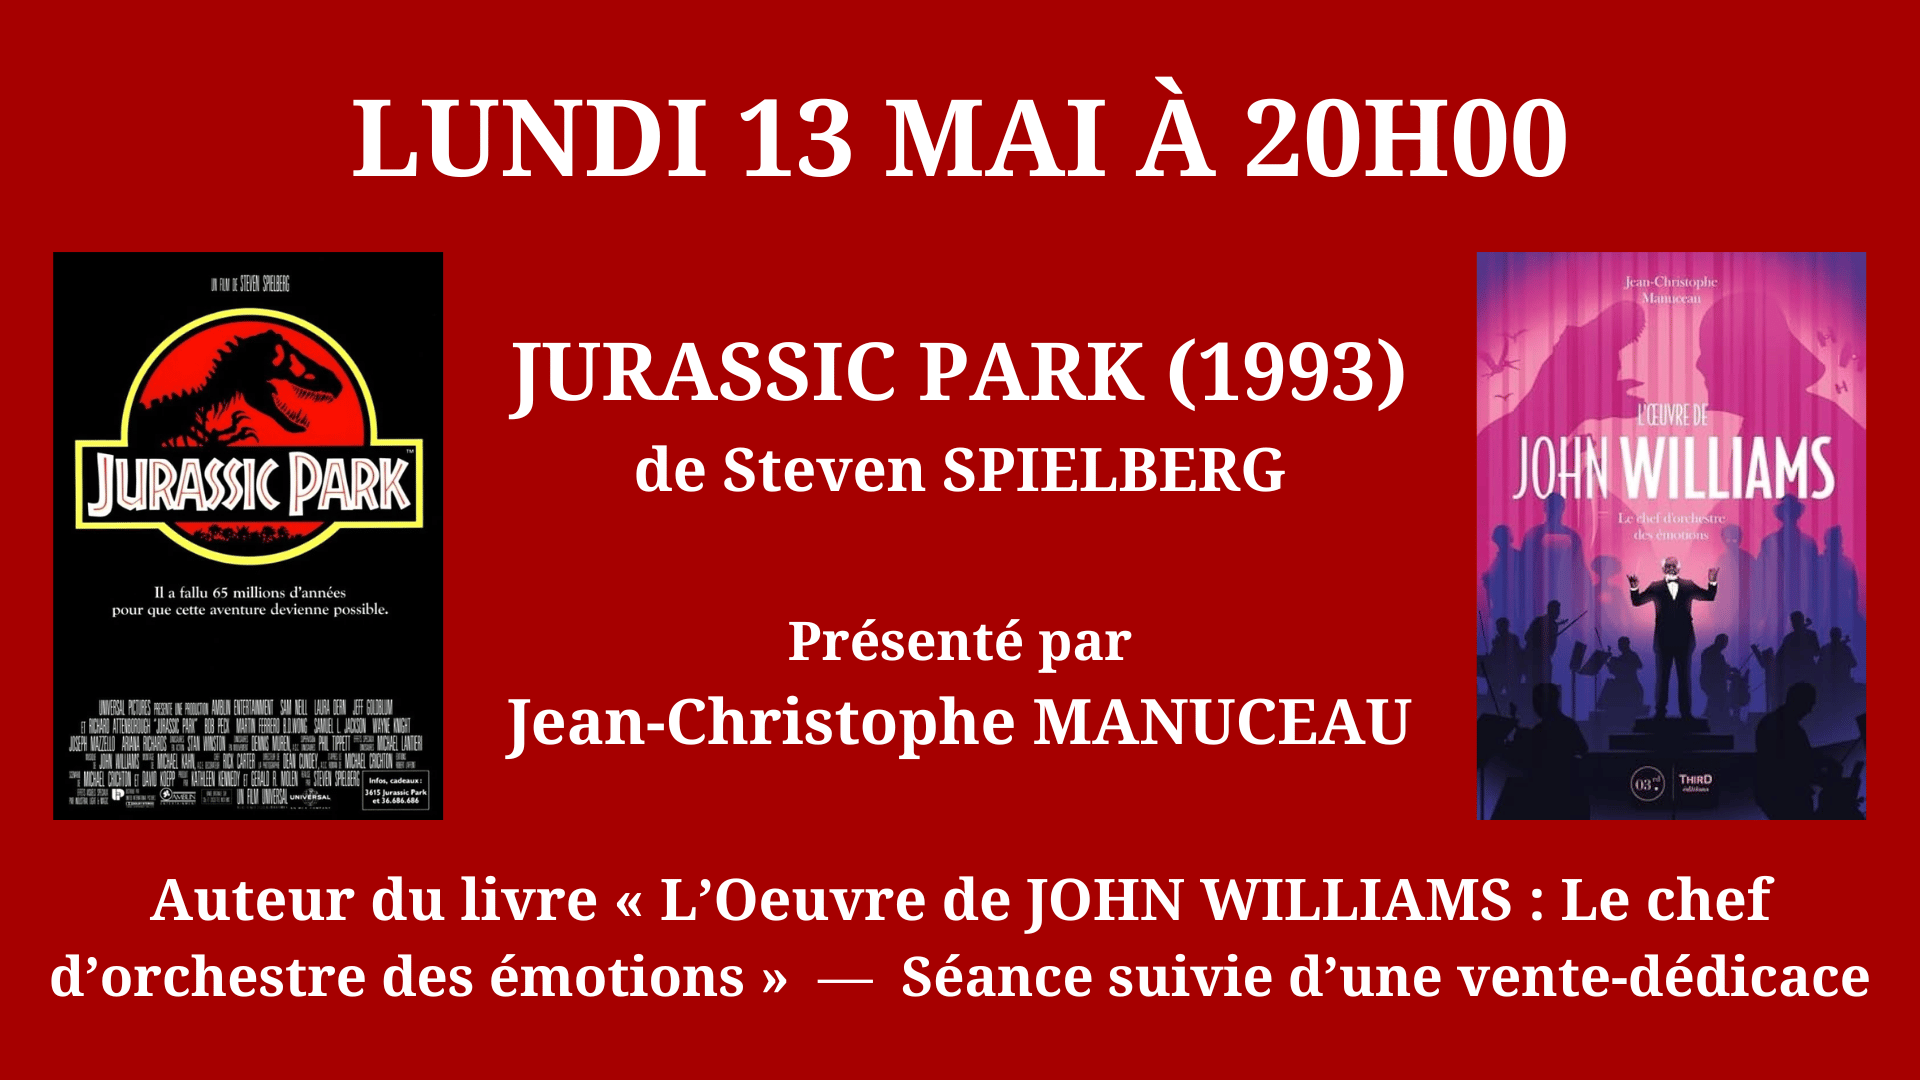 Jurassic Park - JC Manuceau